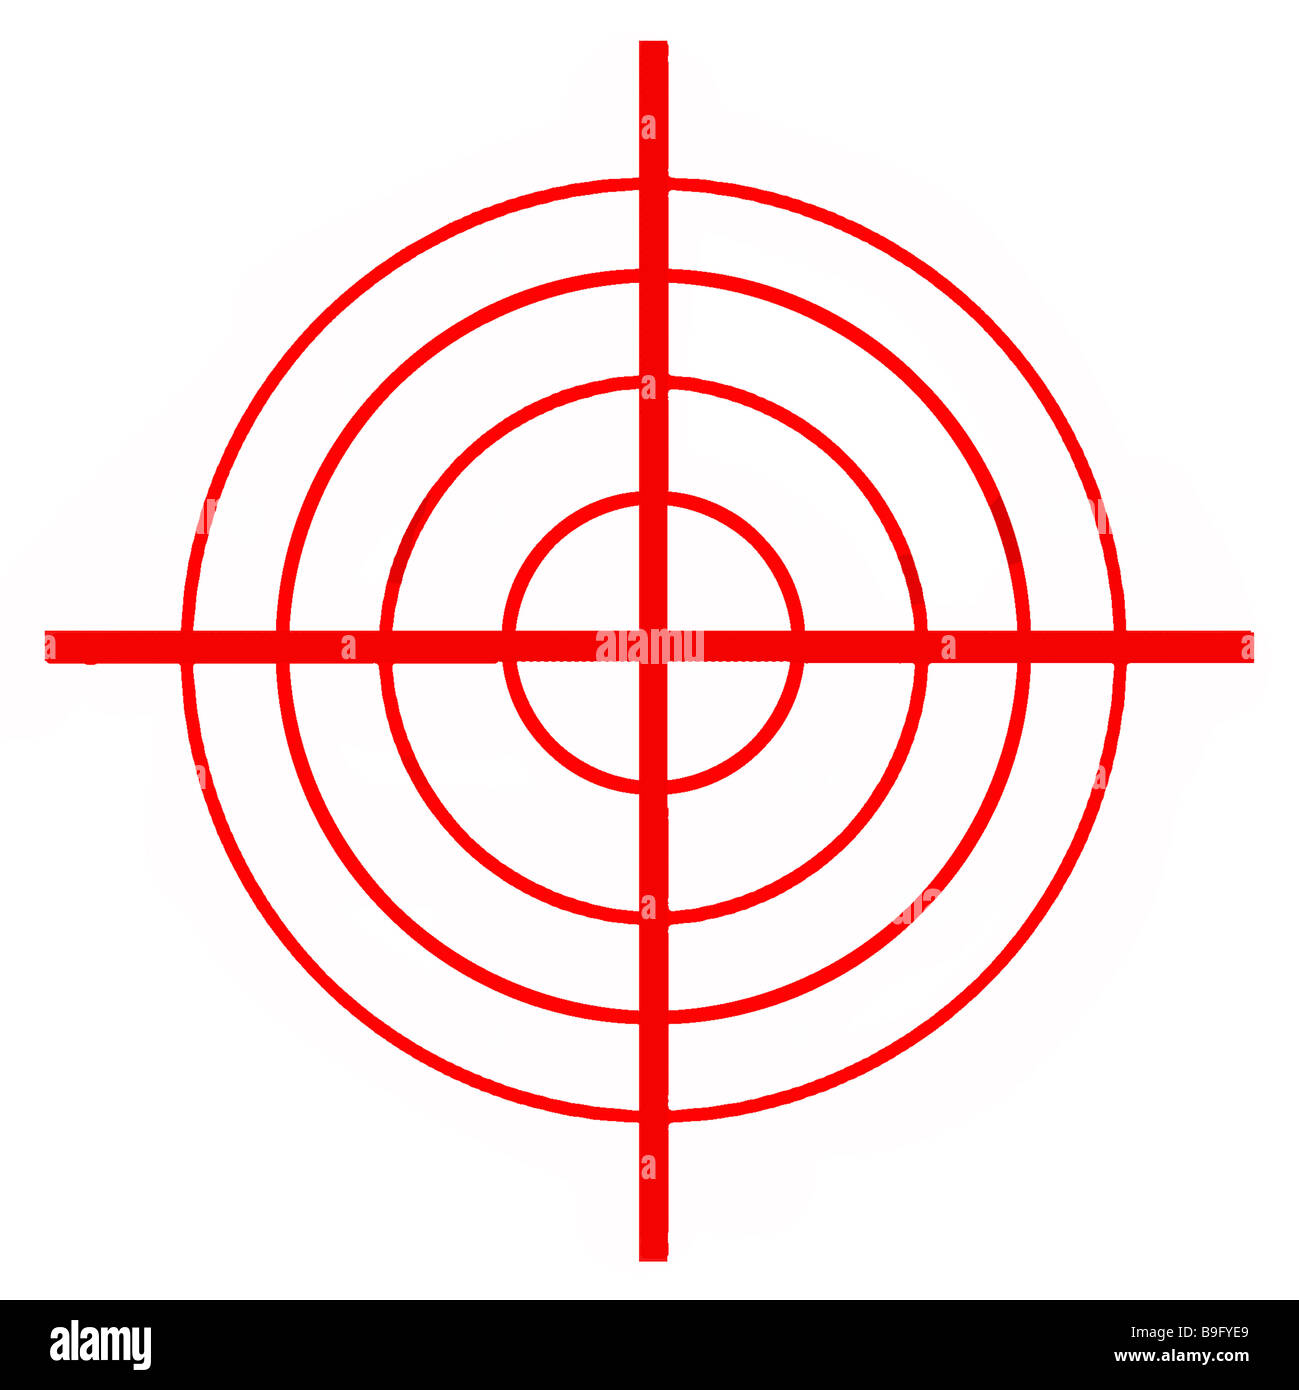 Vue rapprochée de la vue des armes à feu rouge réticules avec fond blanc Banque D'Images